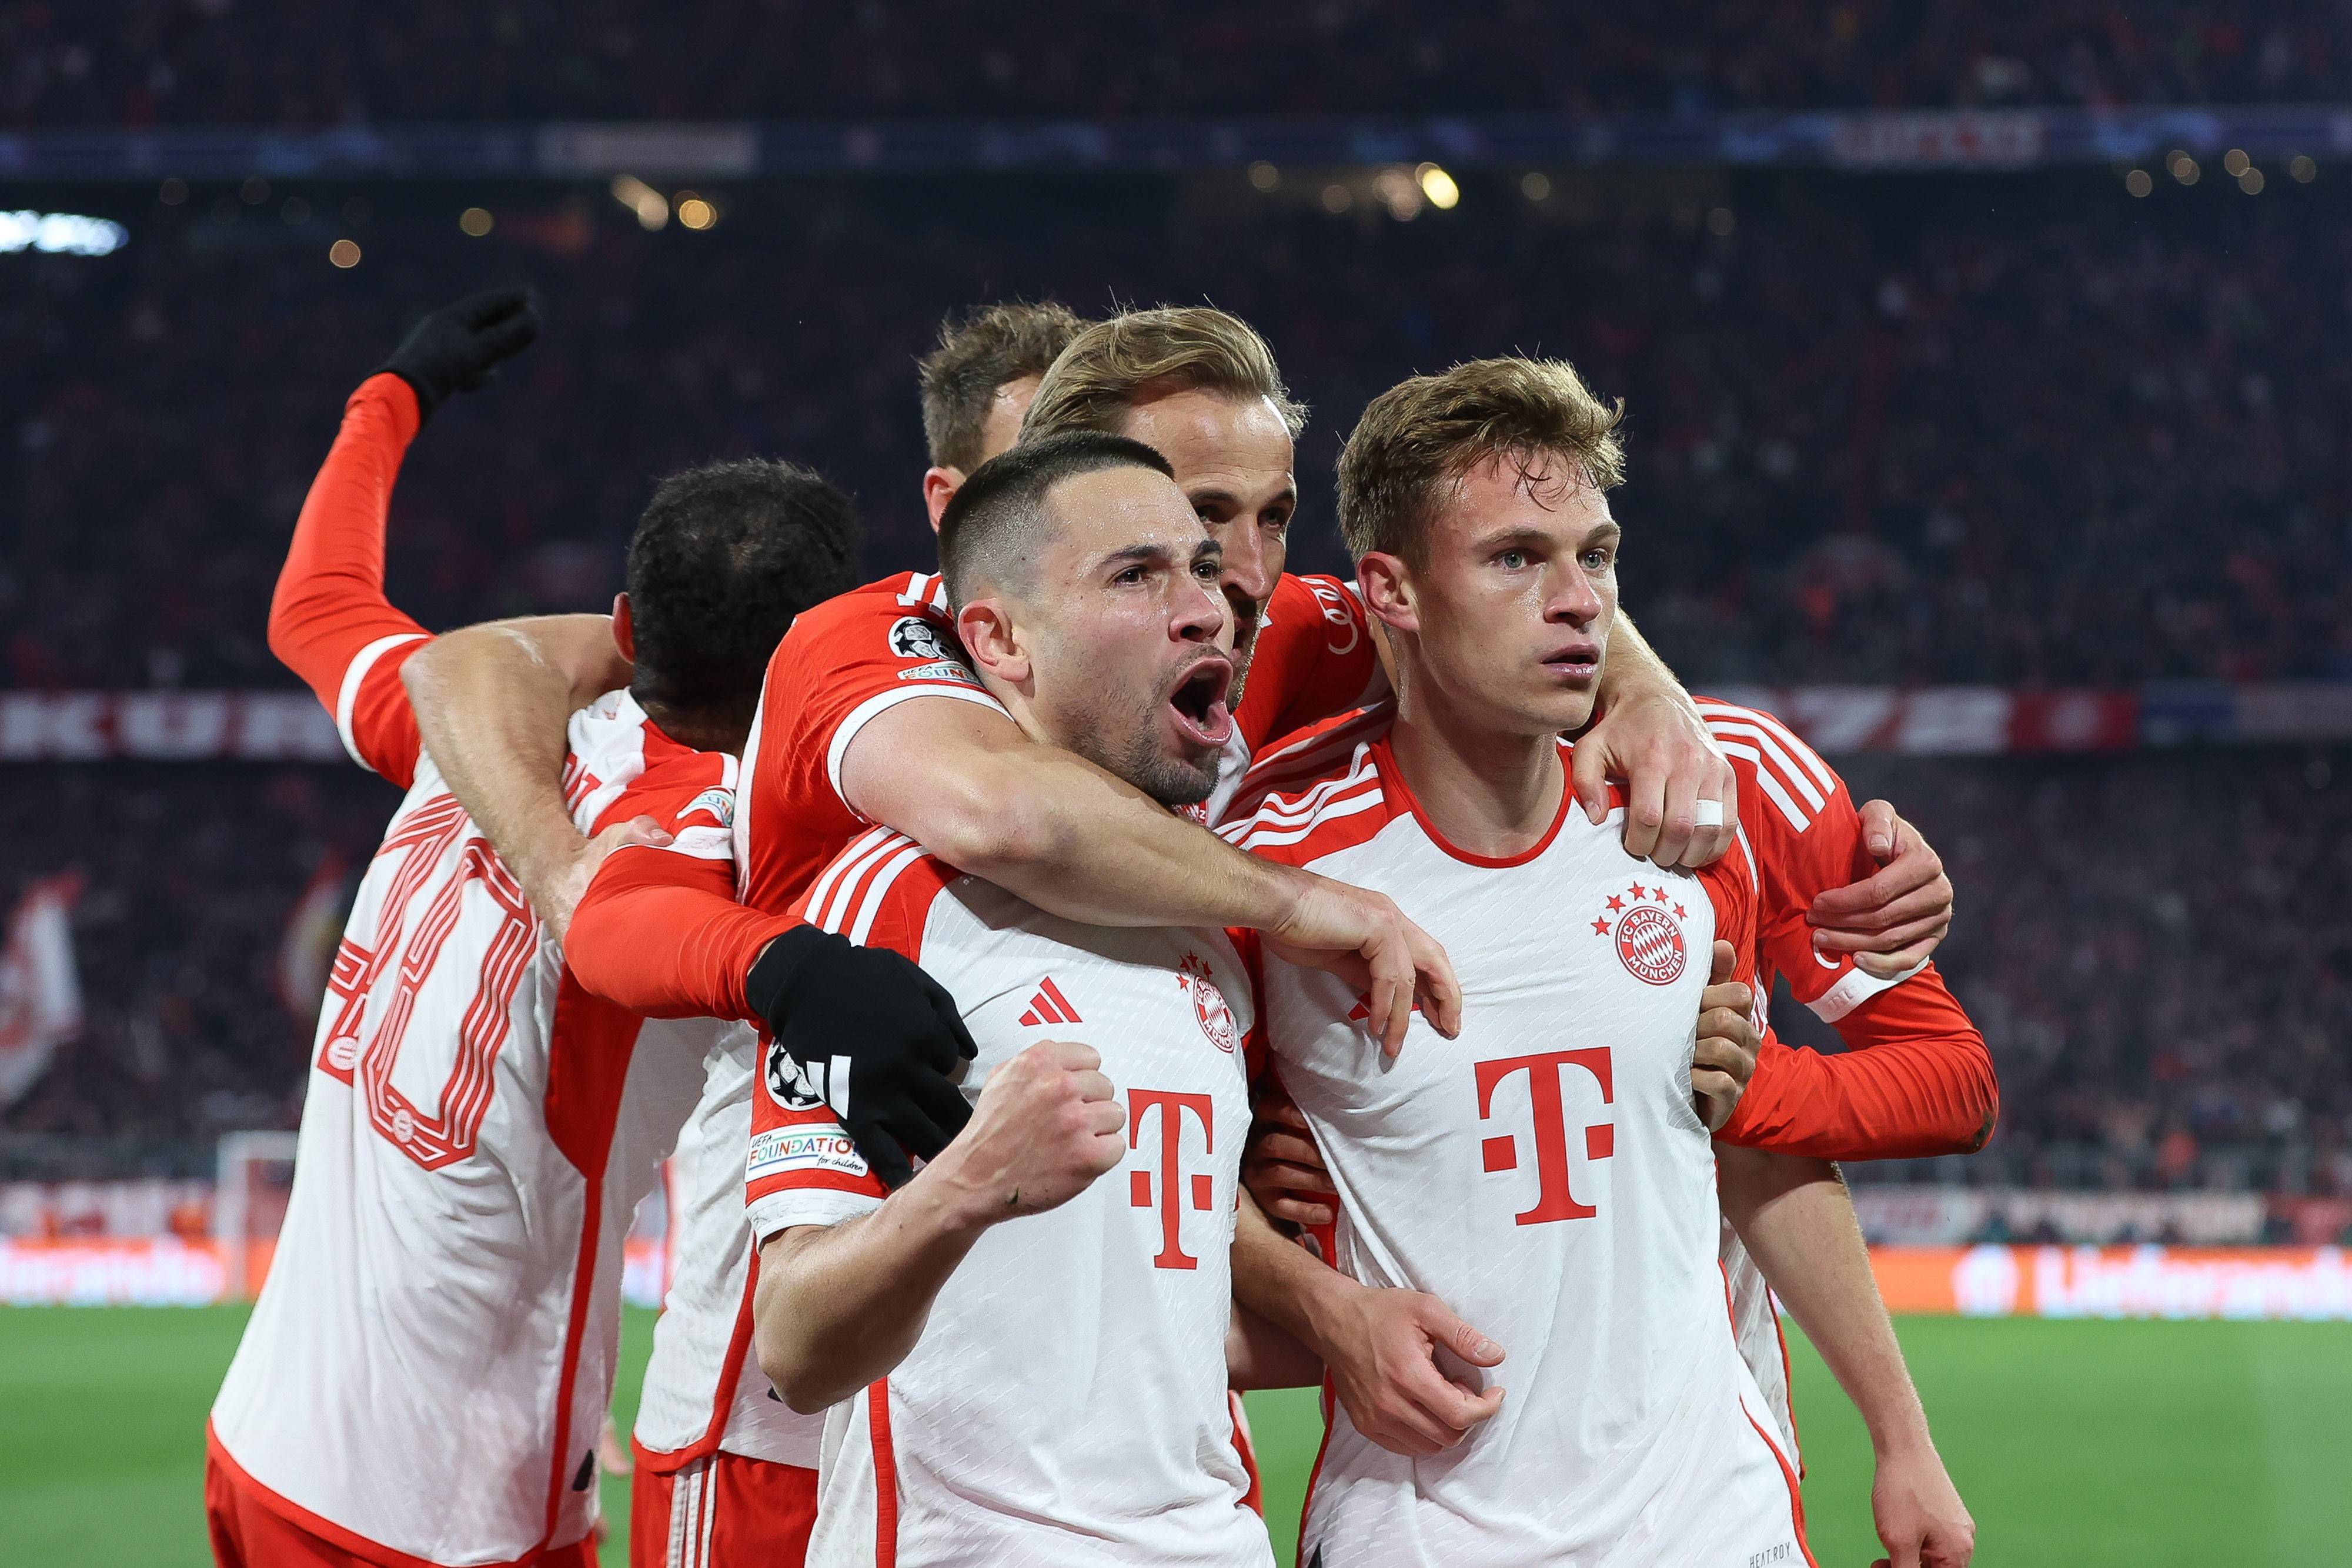 Bayern vence Arsenal com assistência de Guerreiro e está nas 'meias' da Champions (veja o resumo)